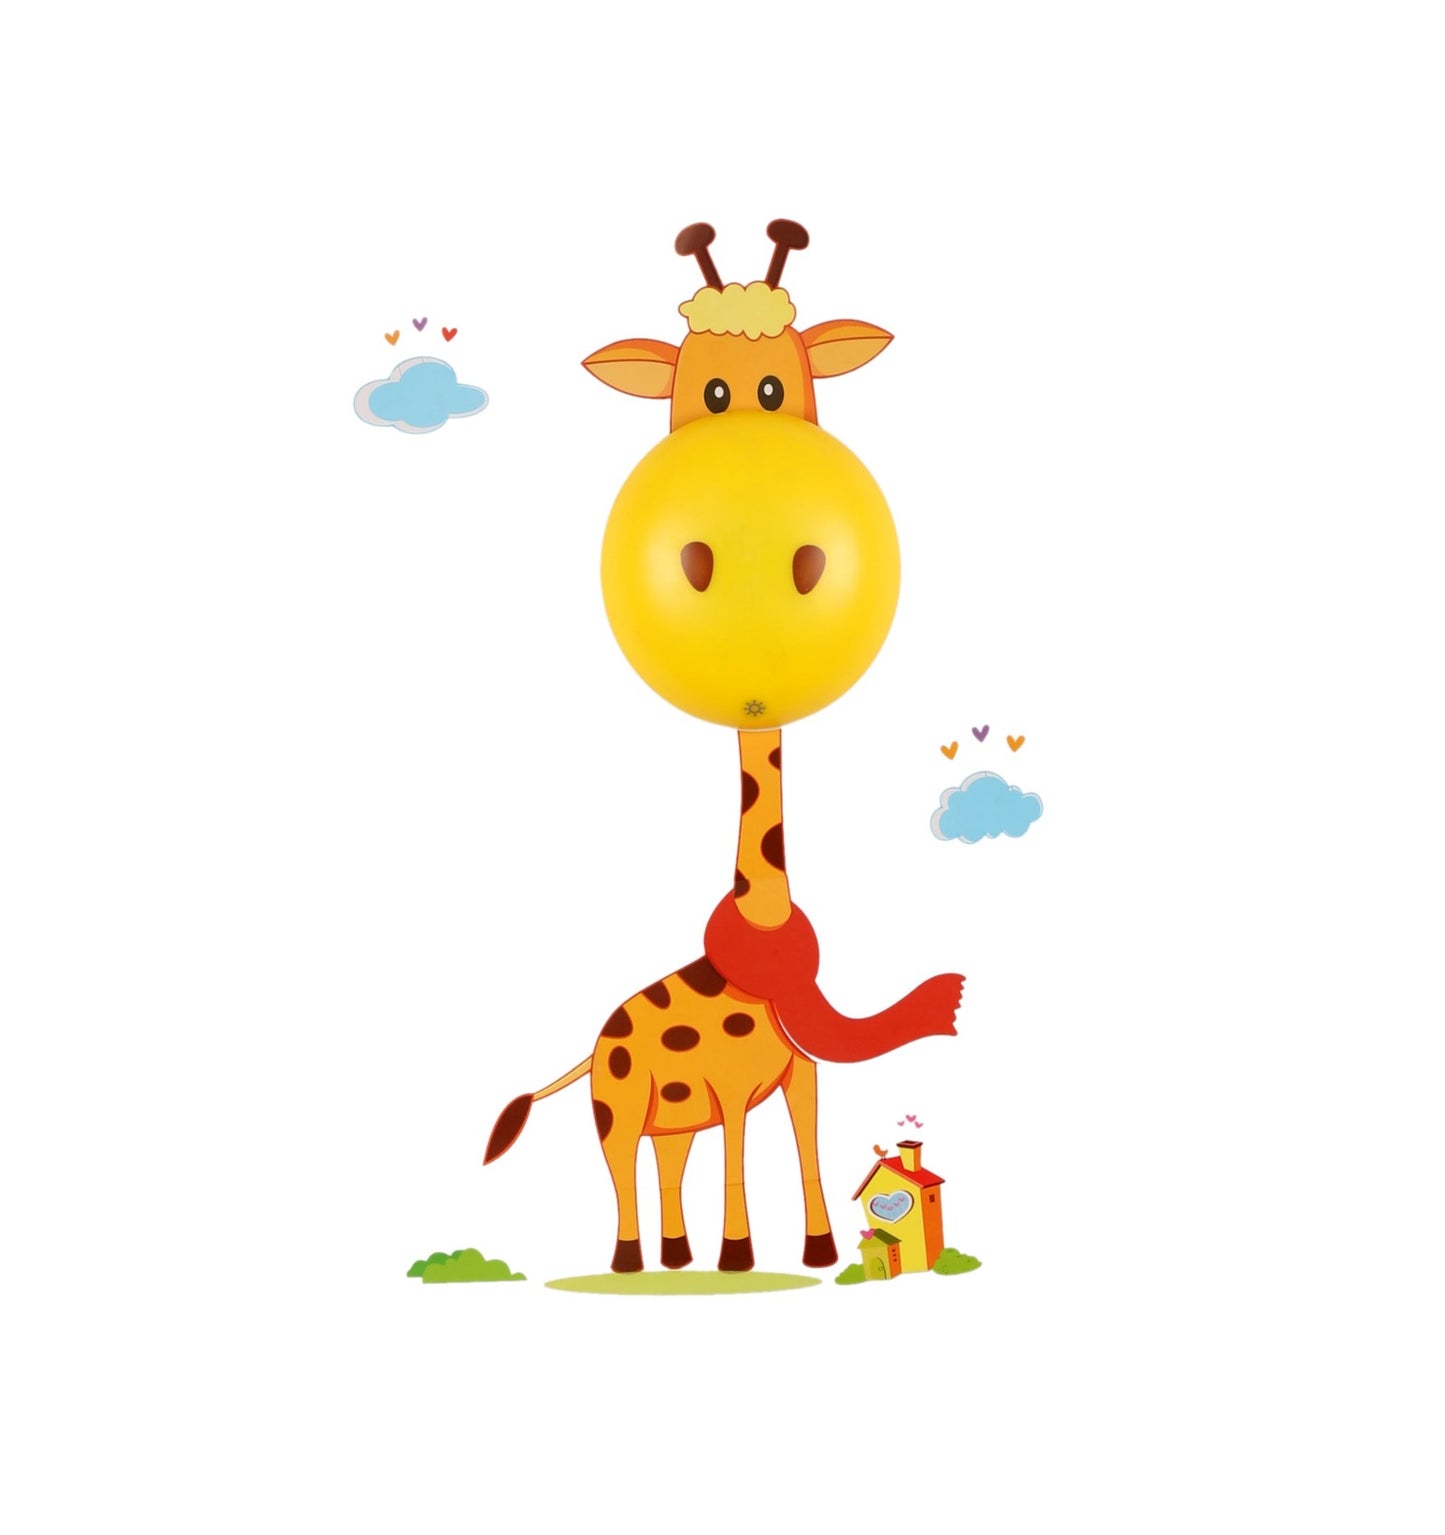 Wall Light Giraffe